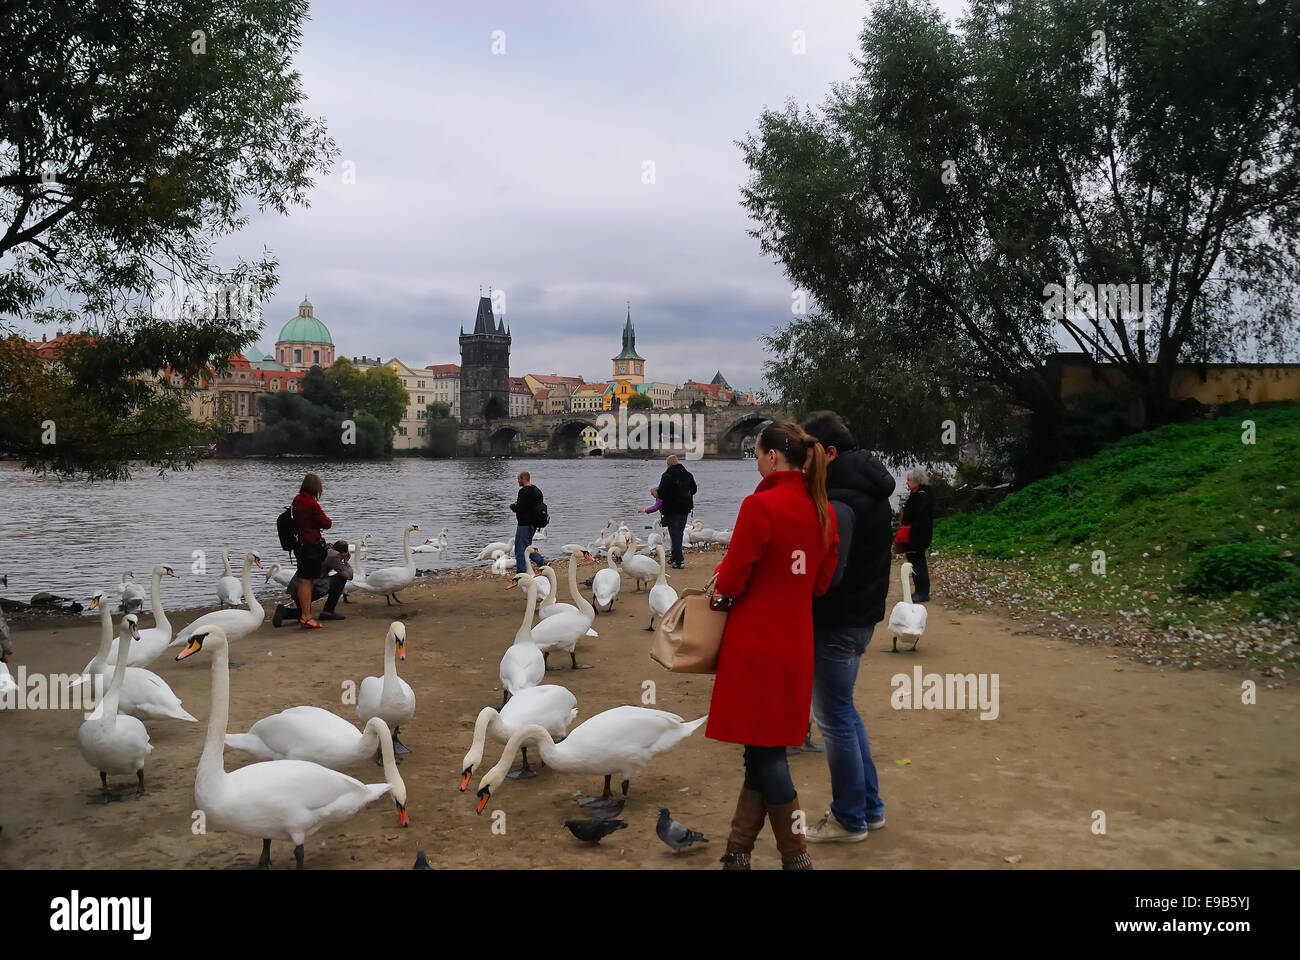 Praga, una pareja observa cisnes en las orillas del río Vltava. En el fondo, el Puente de Carlos (Karluv Most). Foto de stock